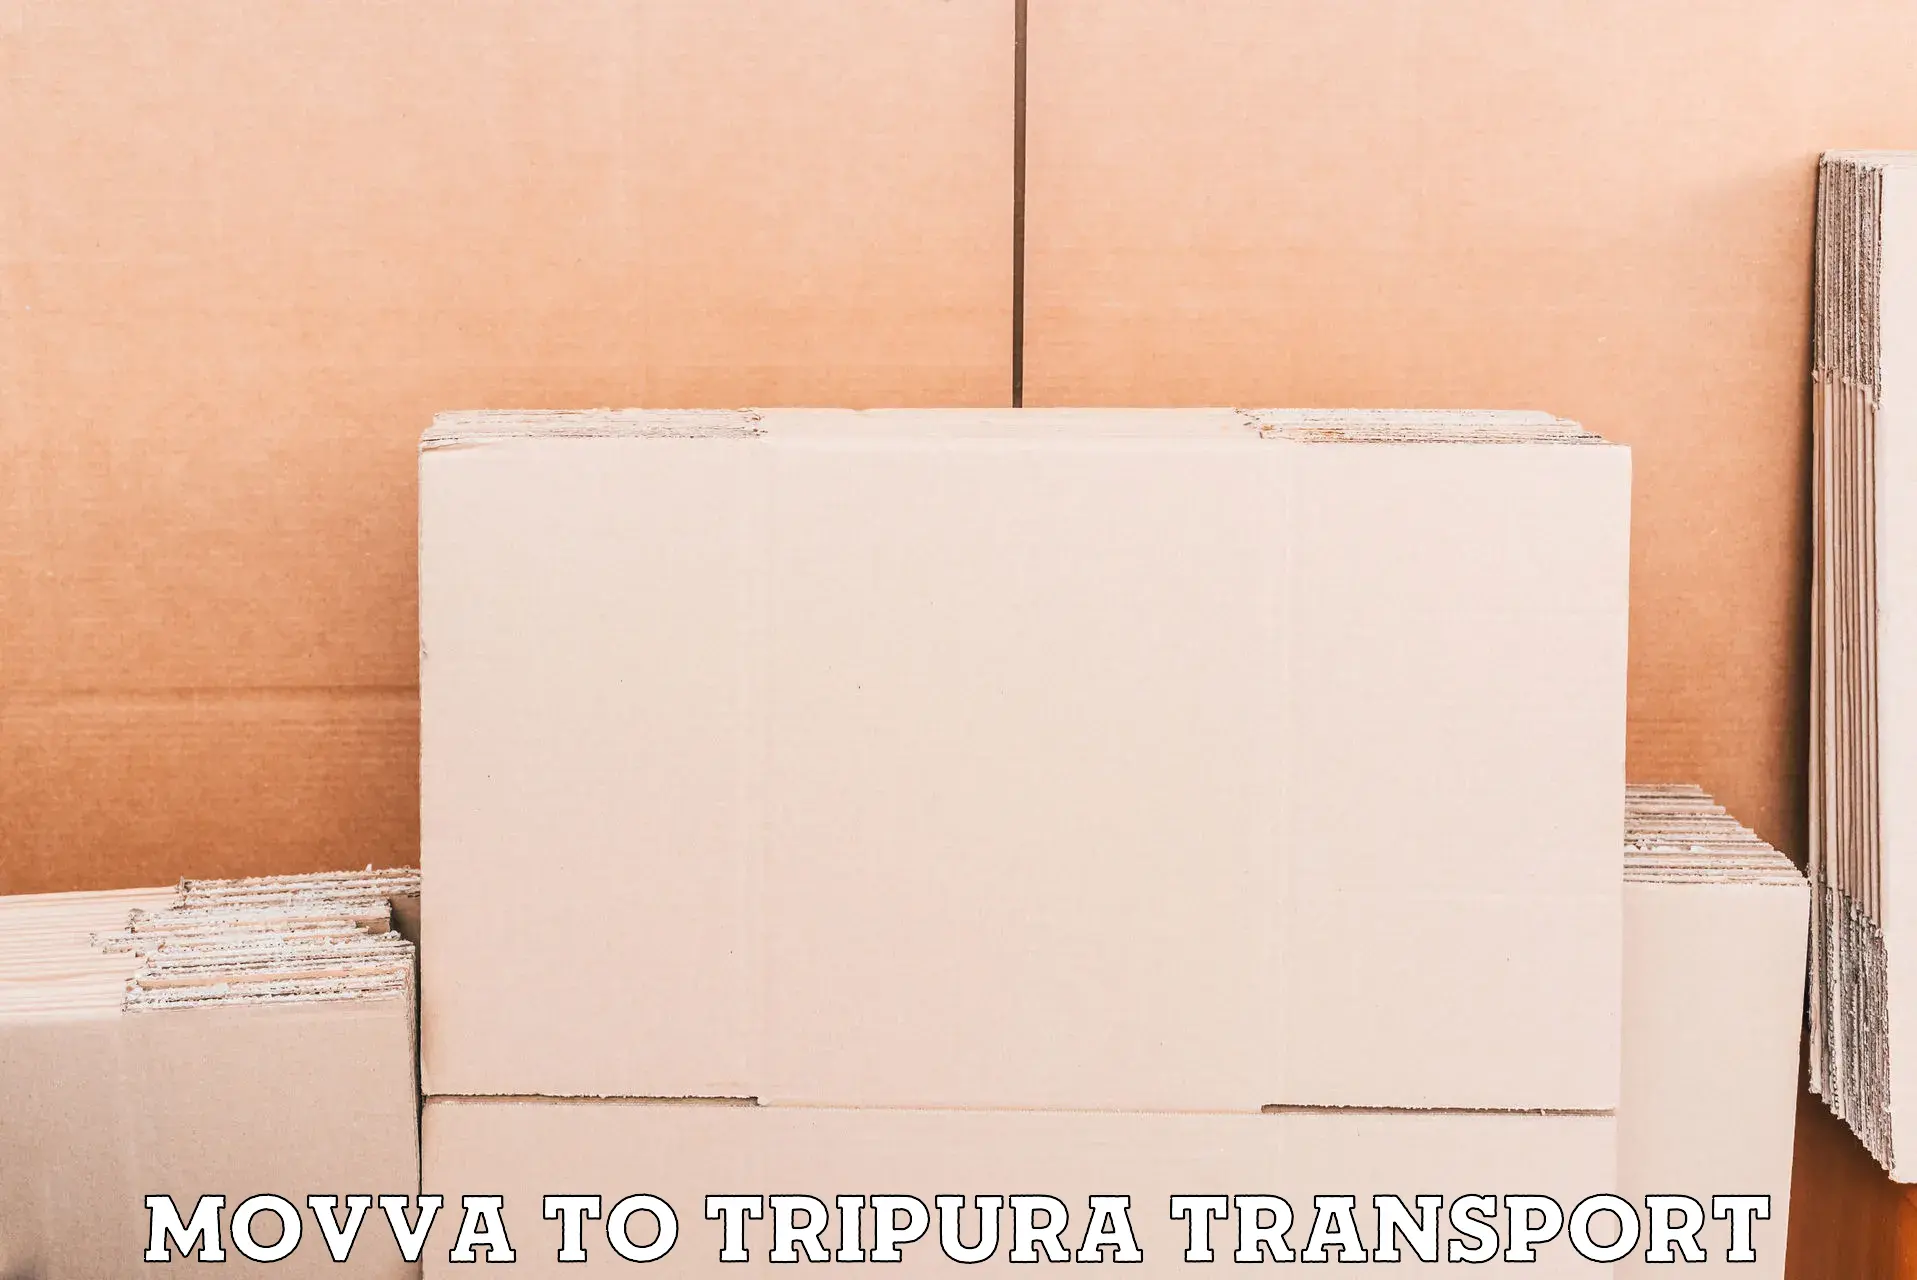 Online transport service Movva to IIIT Agartala